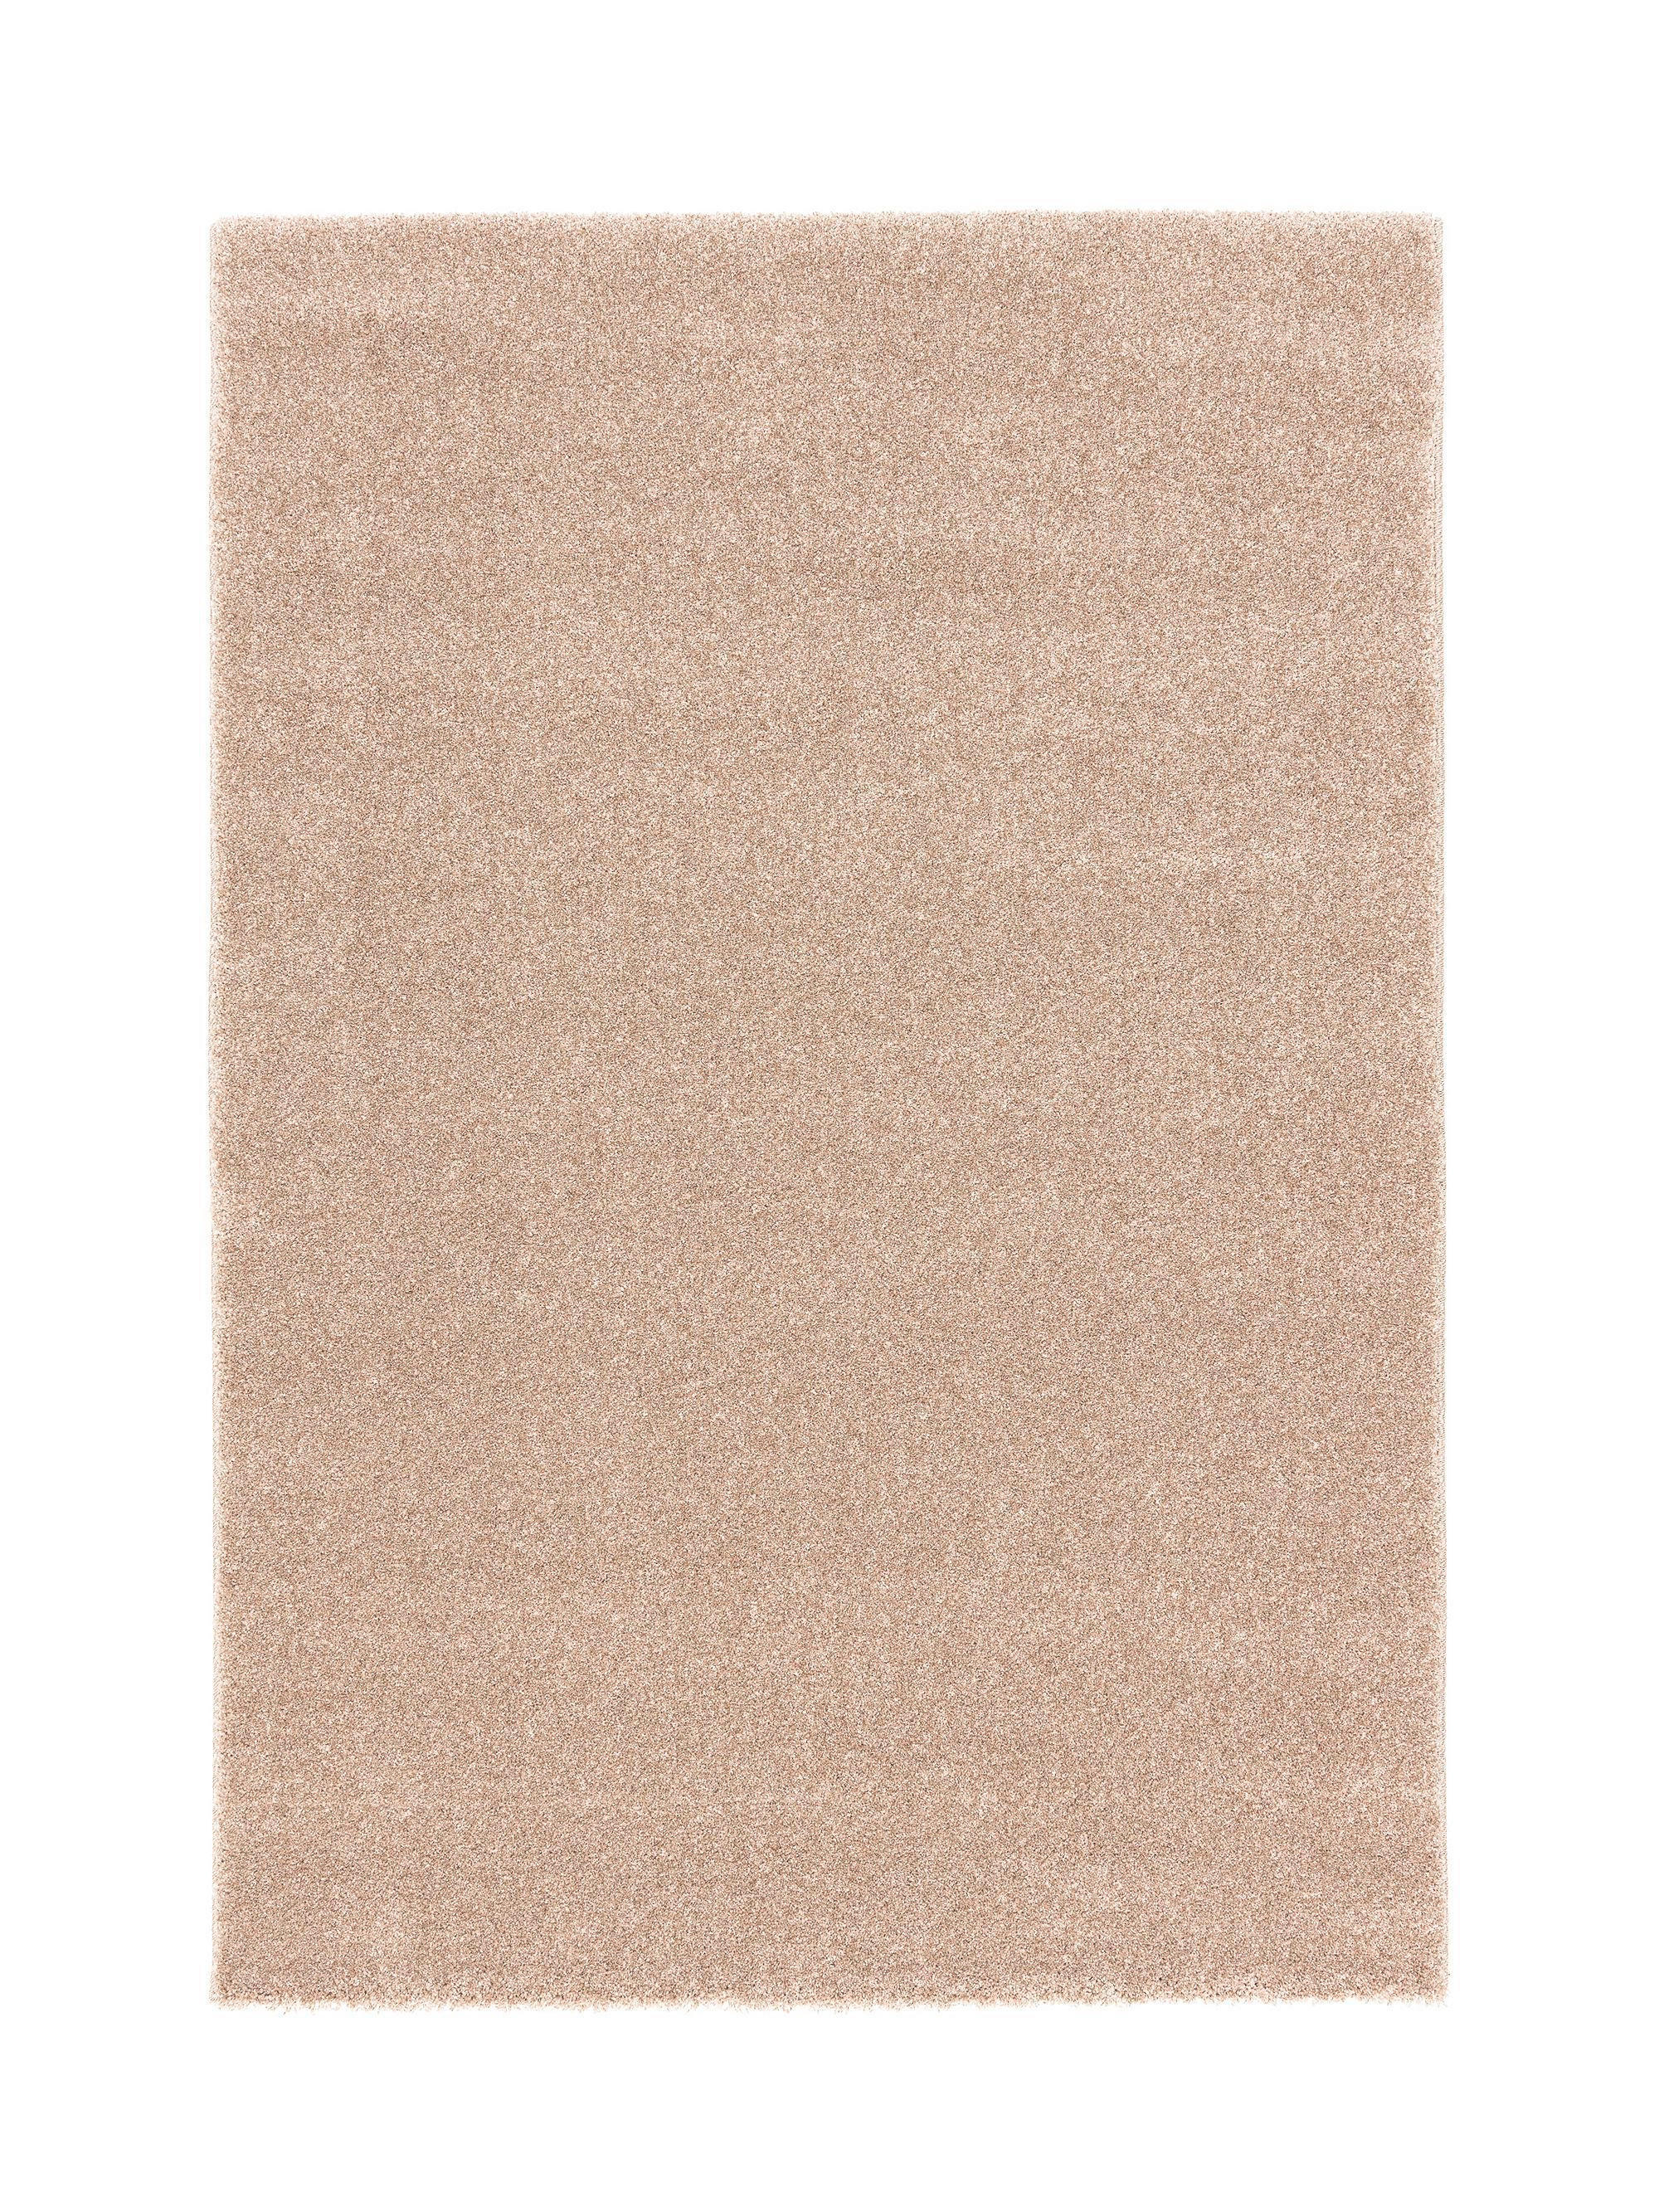 HOCHFLORTEPPICH 200/290 cm  - Haselnussfarben, Basics, Textil (200/290cm) - Novel